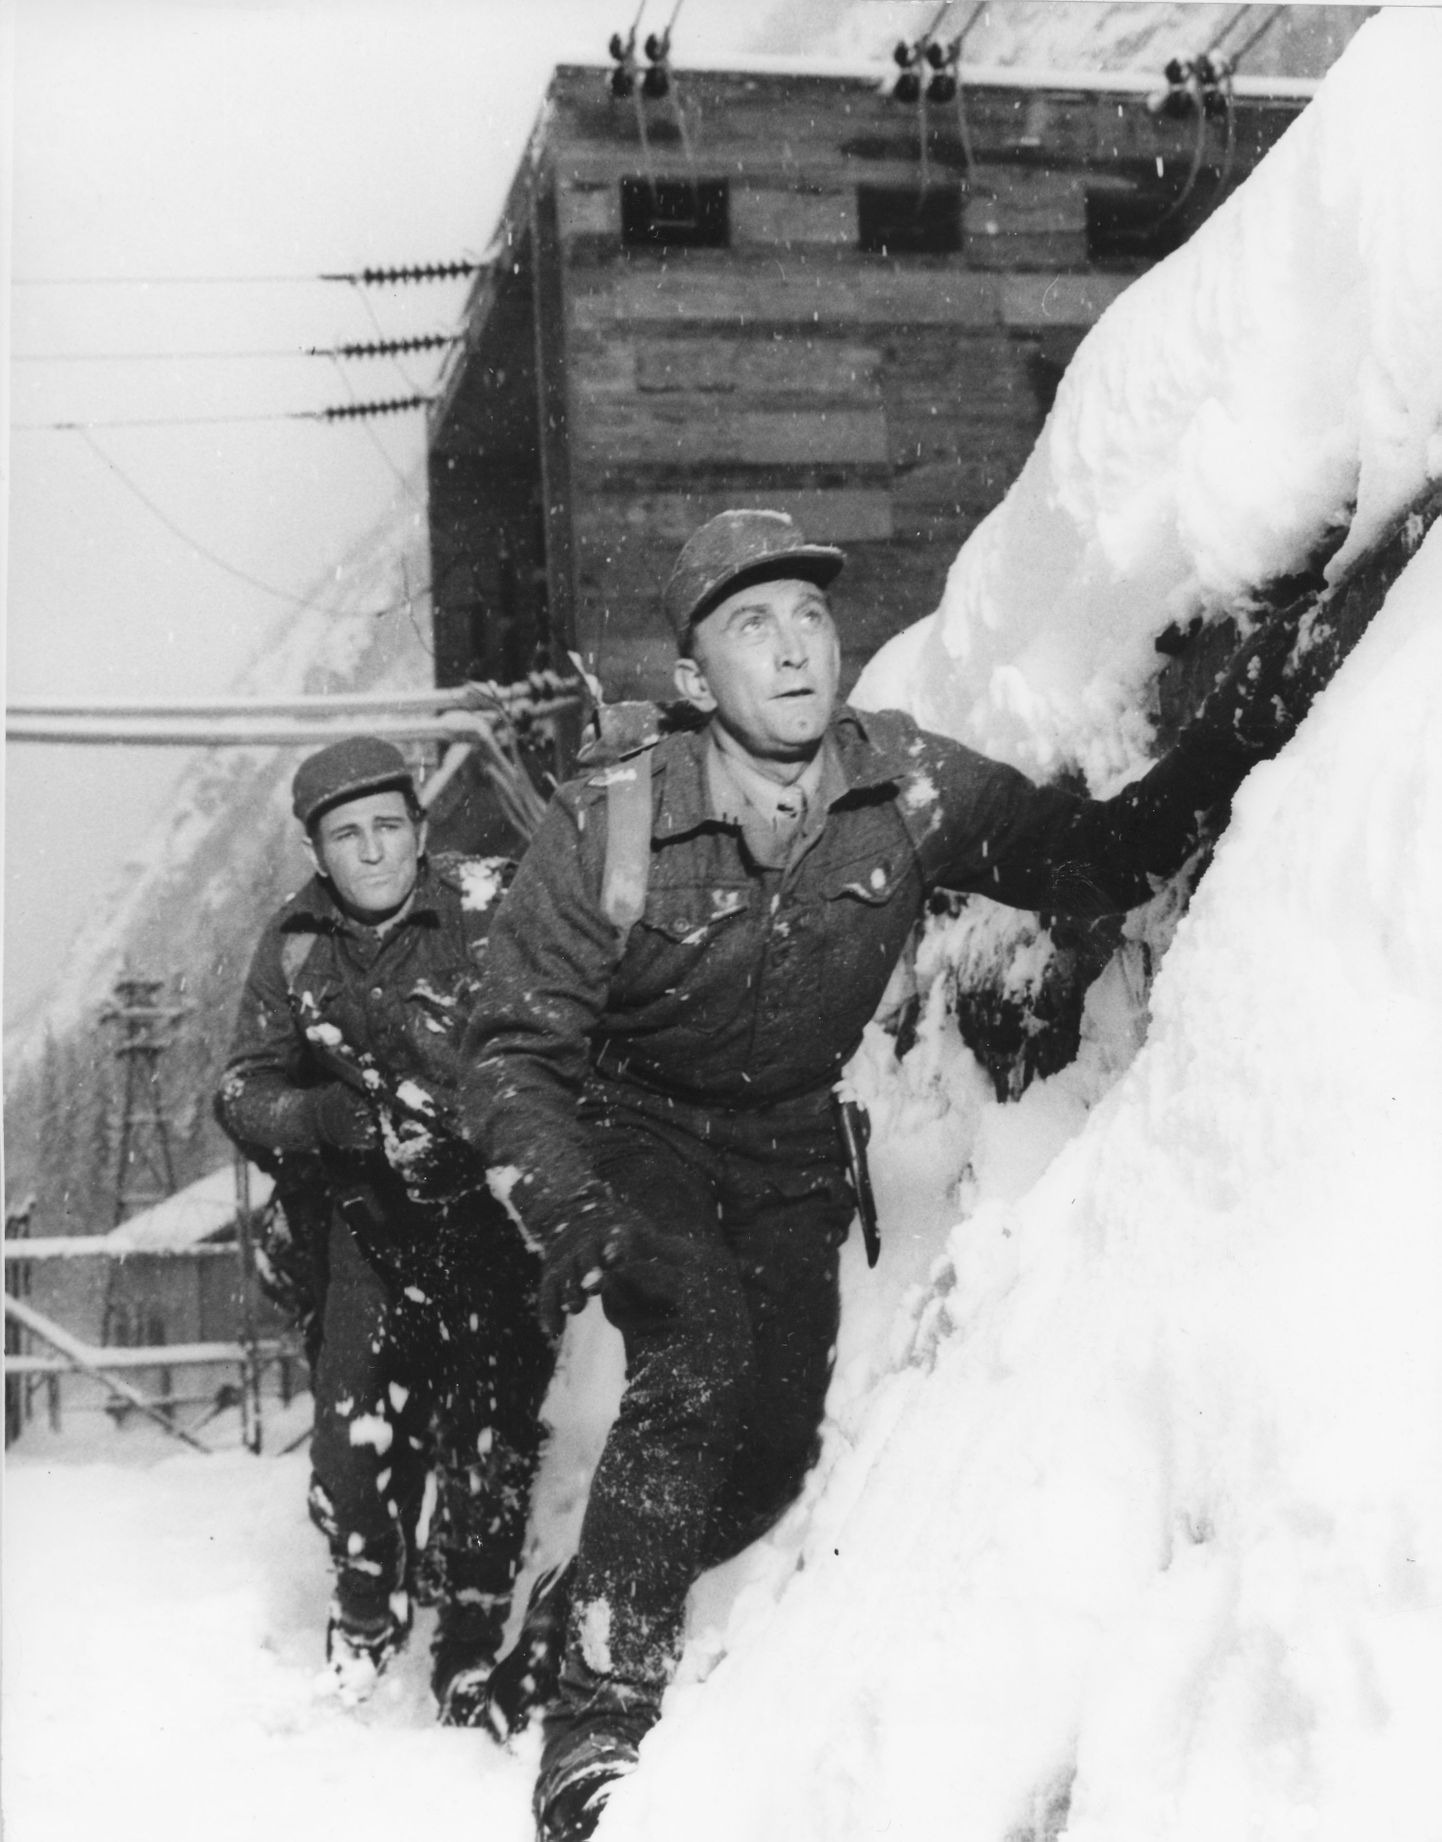 Ricahrd Harris ja Krik Douglas kehastunud Norra vastupanuliikumise võitlejateks 1965. aastal vändatud filmis.